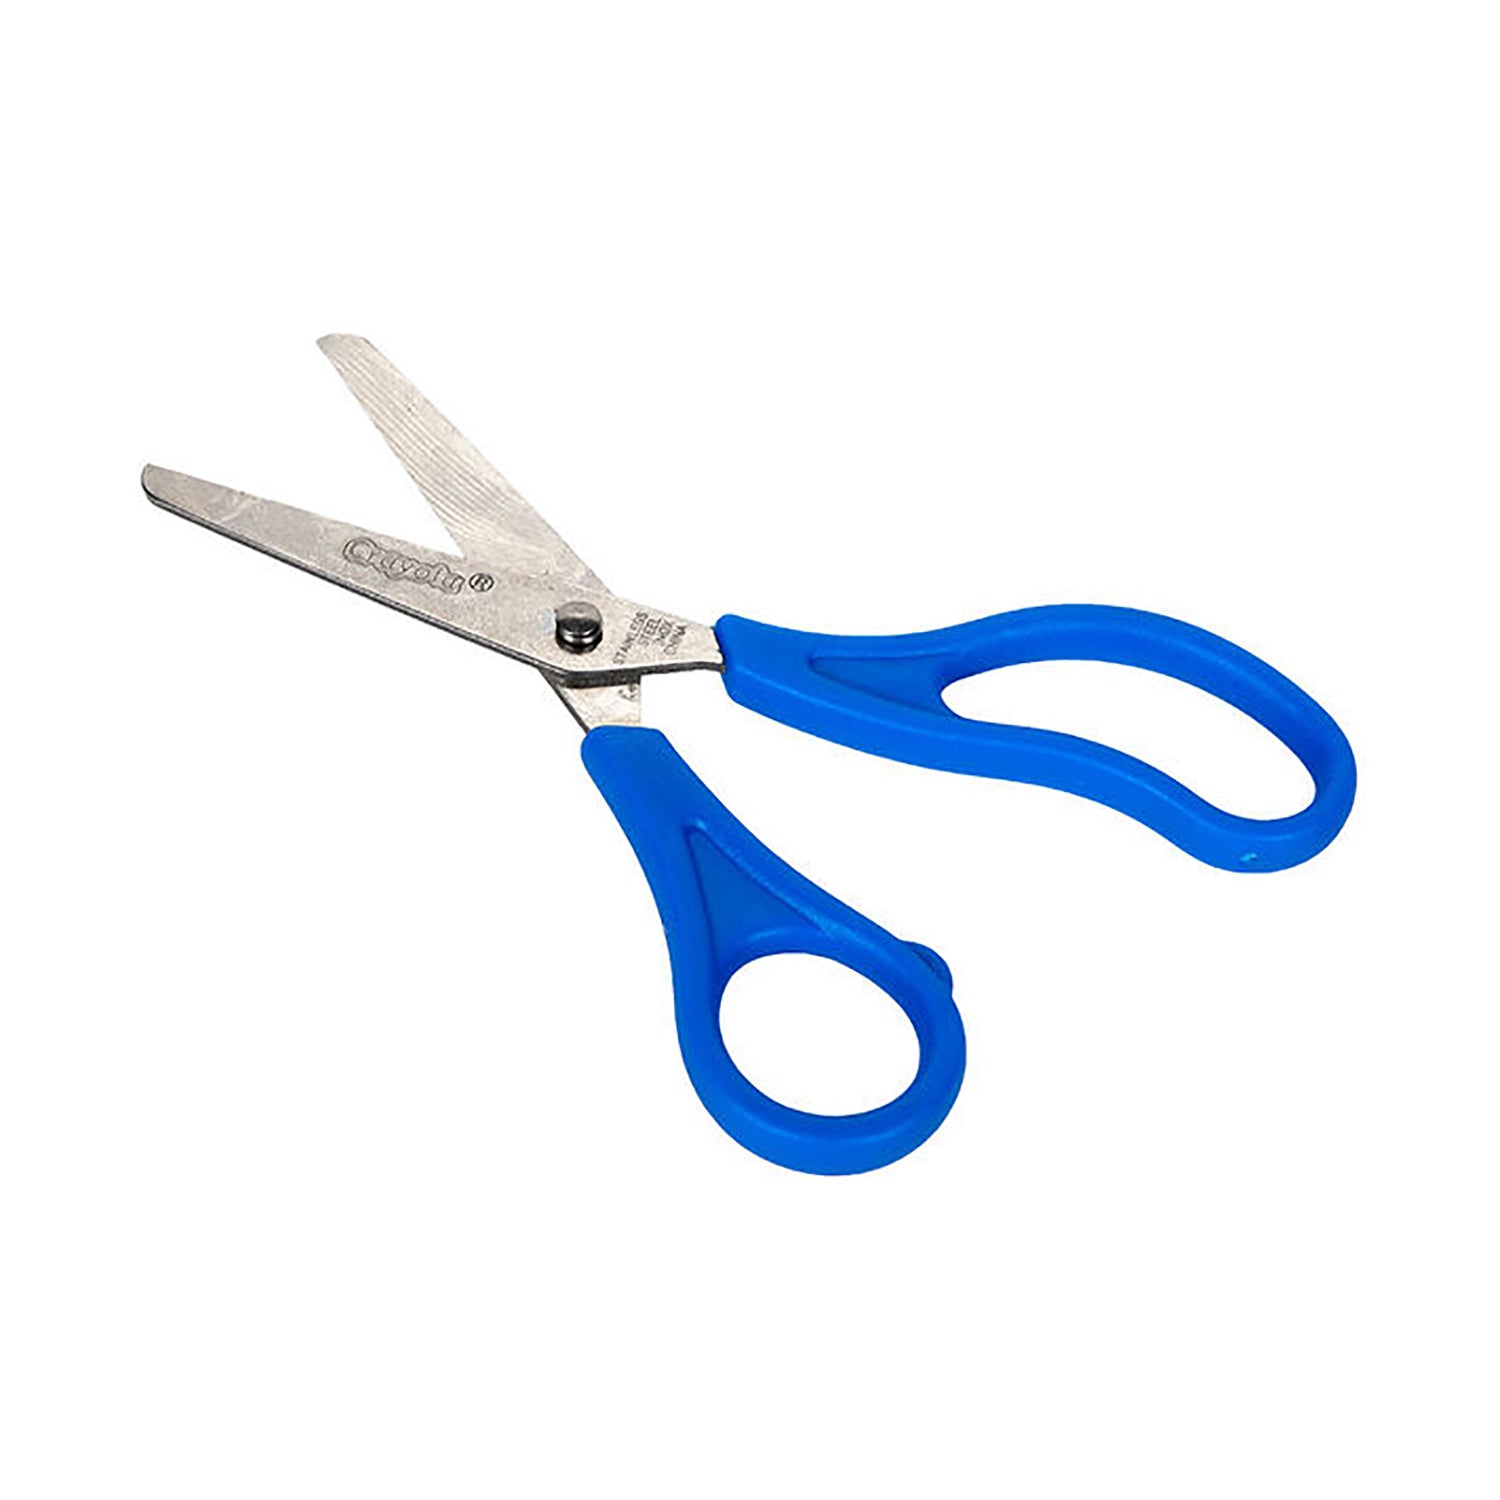 https://goodsstores.com/cdn/shop/files/69-3009-blunt-tip-blue-scissors-2_1024x1024@2x.jpg?v=1691065808